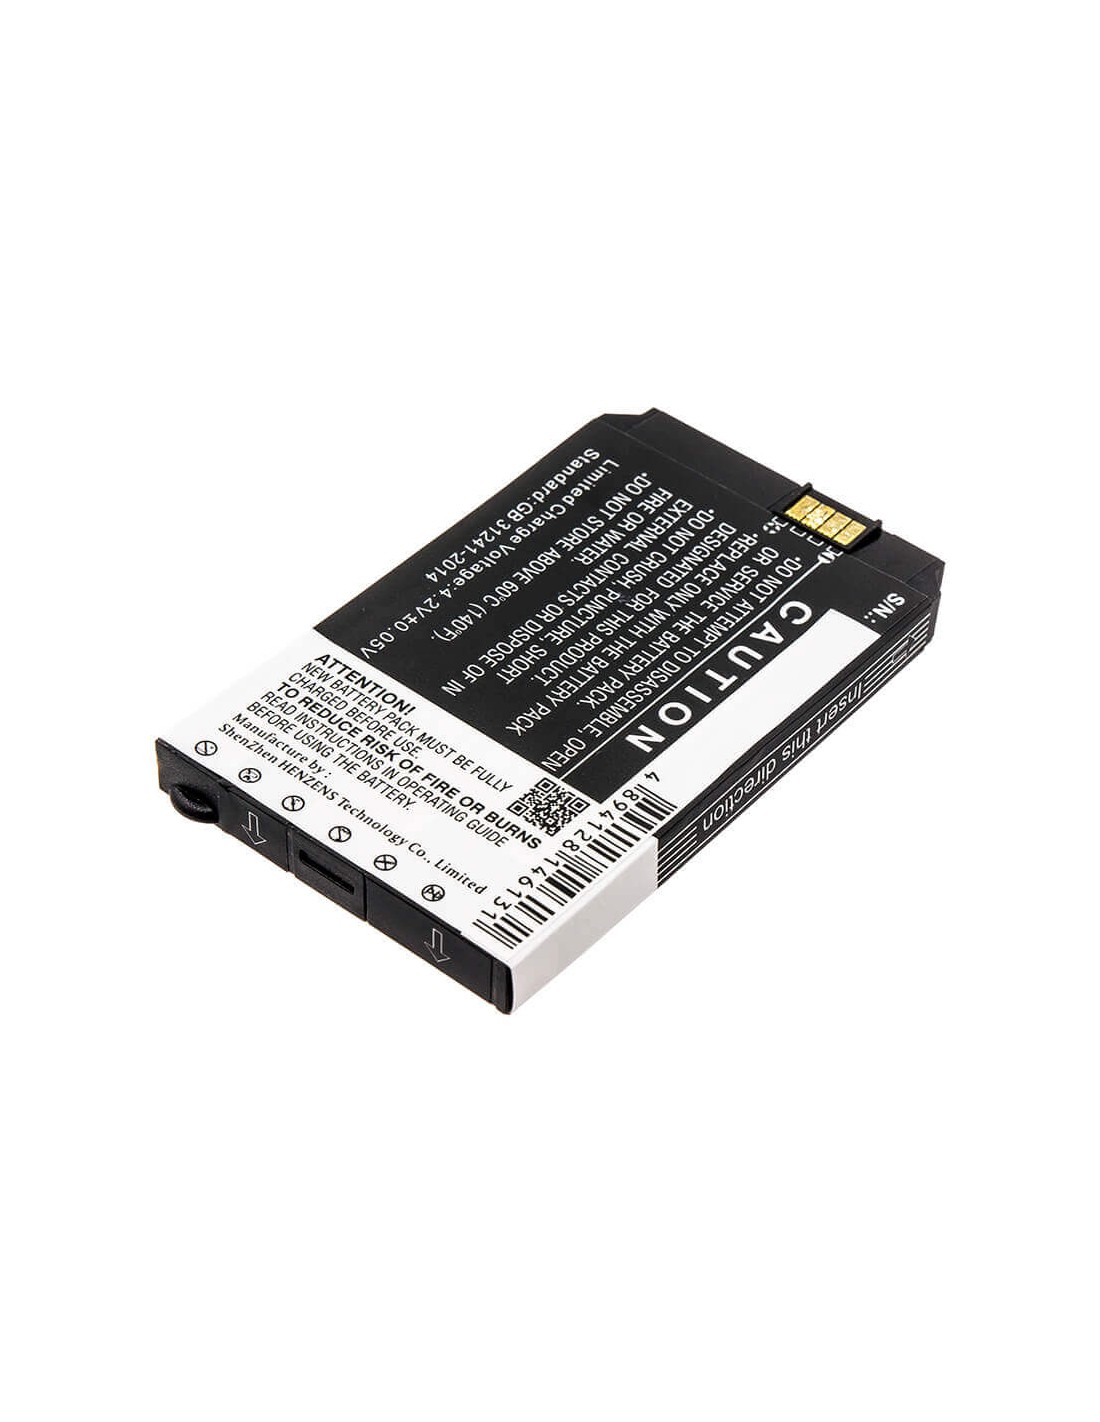 Battery for Cisco, 7026g, 74-5468-01 3.7V, 1500mAh - 5.55Wh